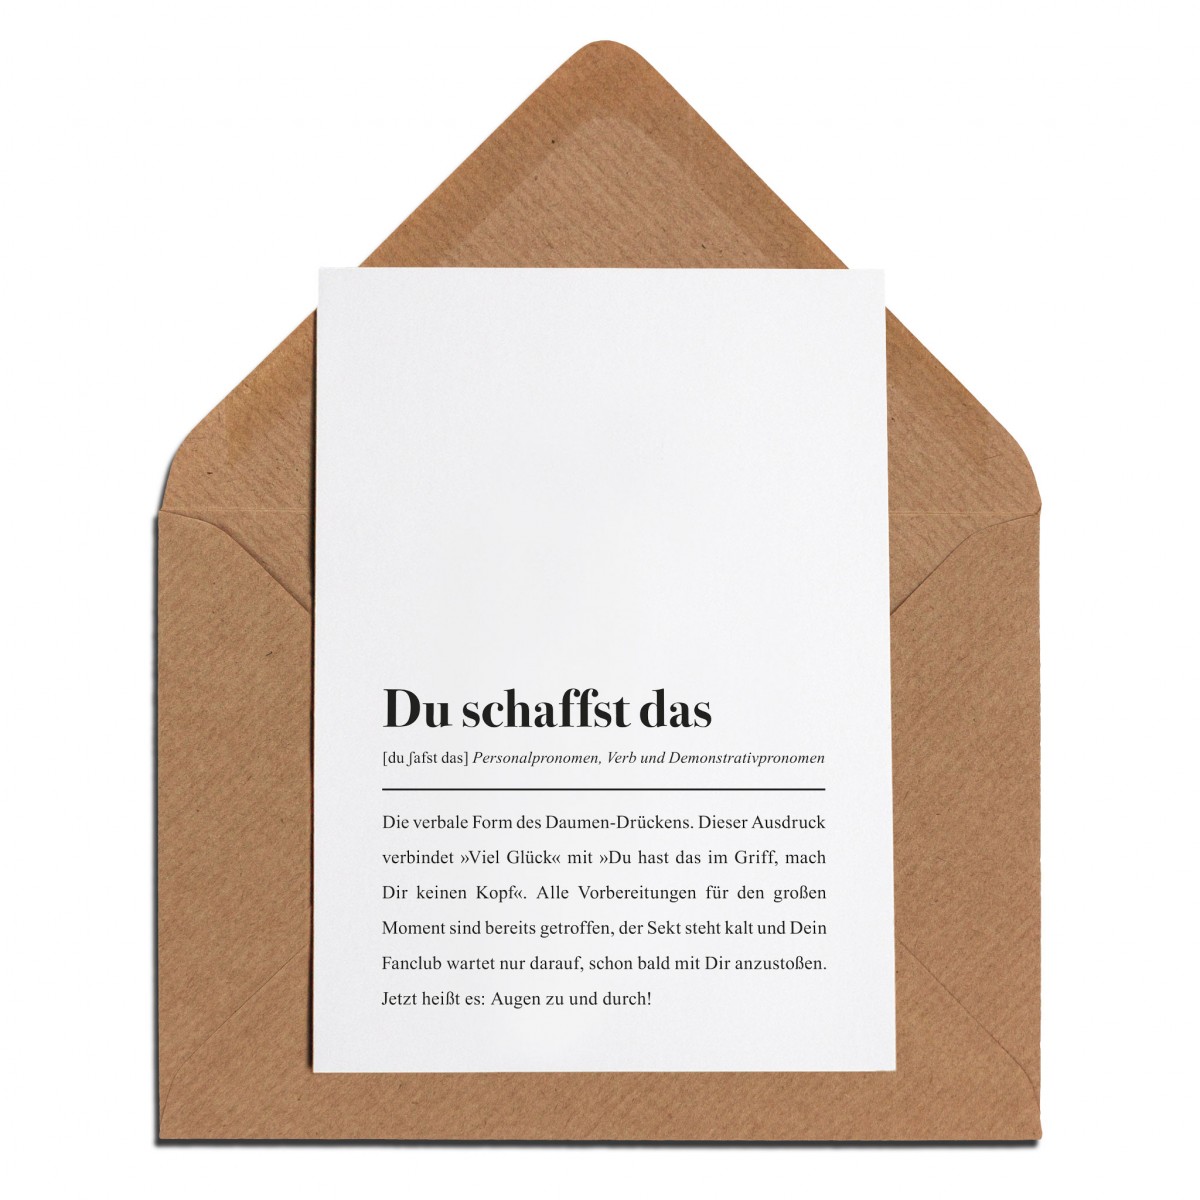 3x Motivationskarte mit Umschlag: "Du schaffst das" Definition